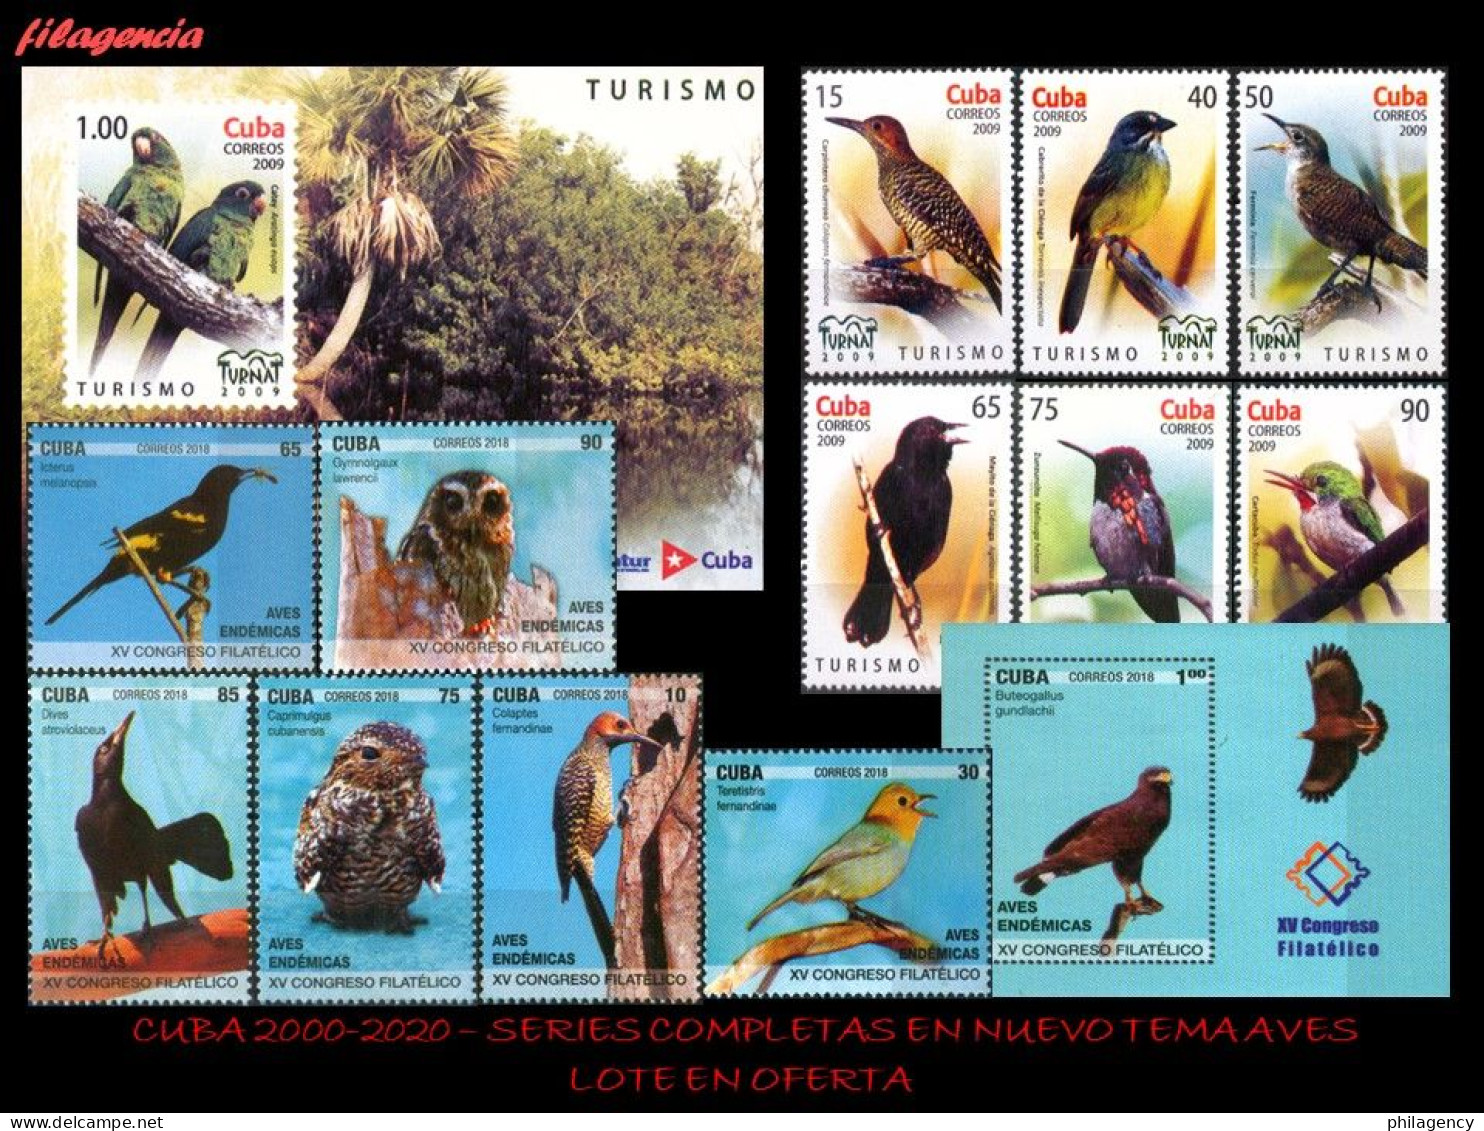 LOTES EN OFERTA. CUBA MINT. 2000-2020 LOTE DE 10 EMISIONES DIFERENTES & COMPLETAS. TEMÁTICA: AVES - Unused Stamps